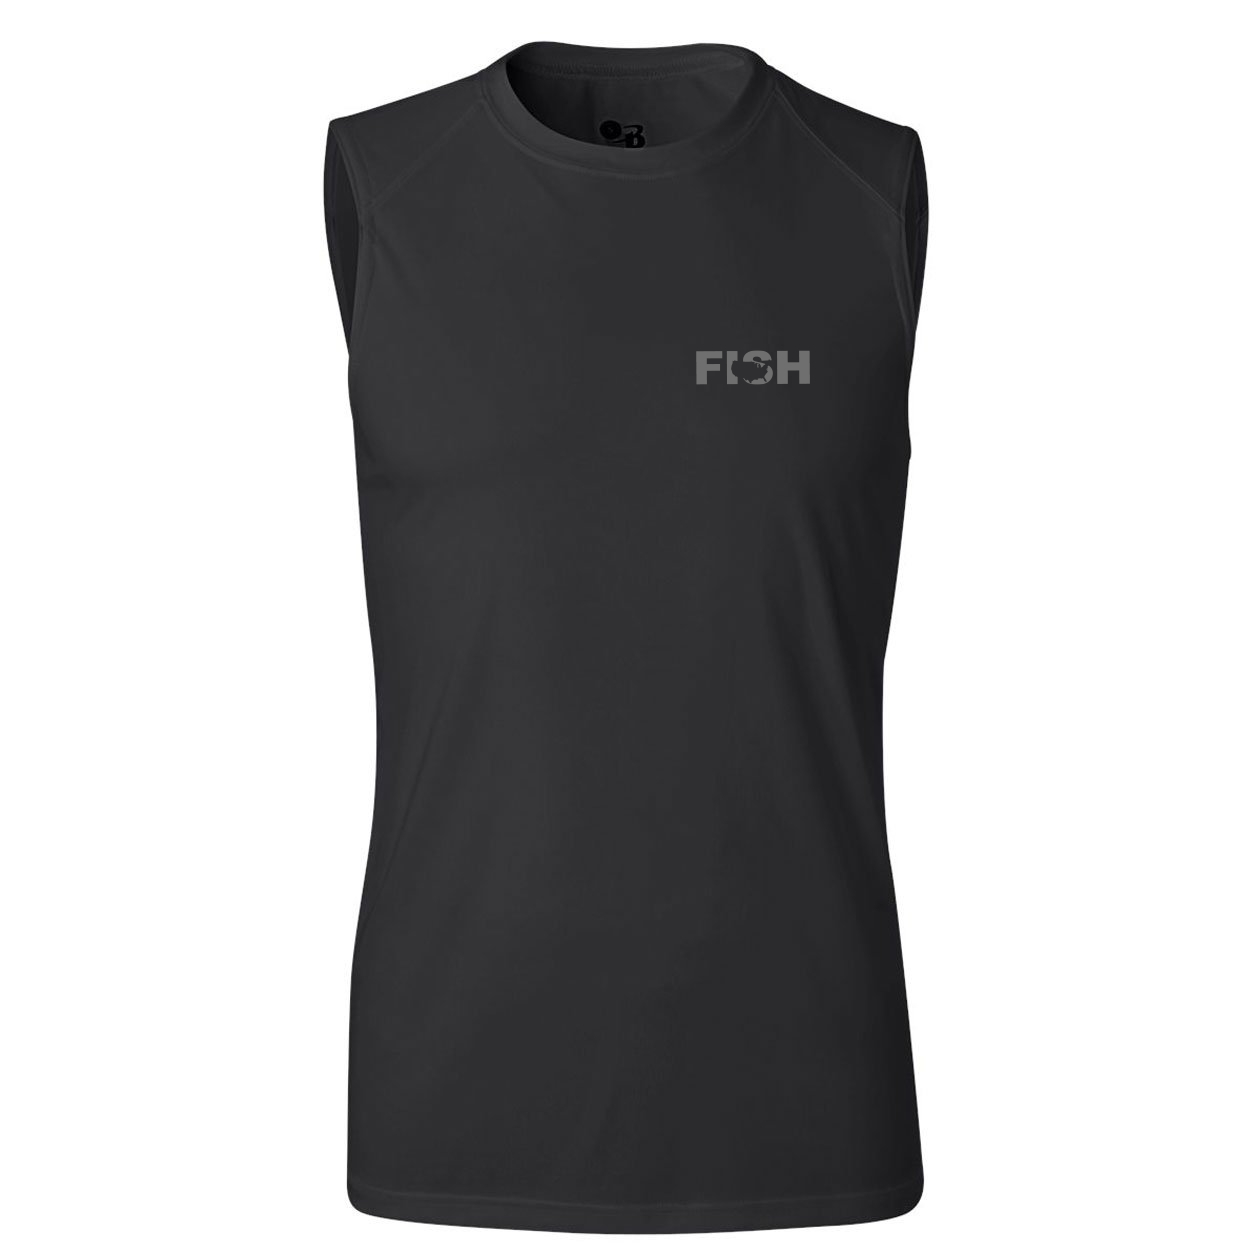 Fish United States Night Out Unisex Performance Sleeveless T-Shirt Black (Gray Logo)